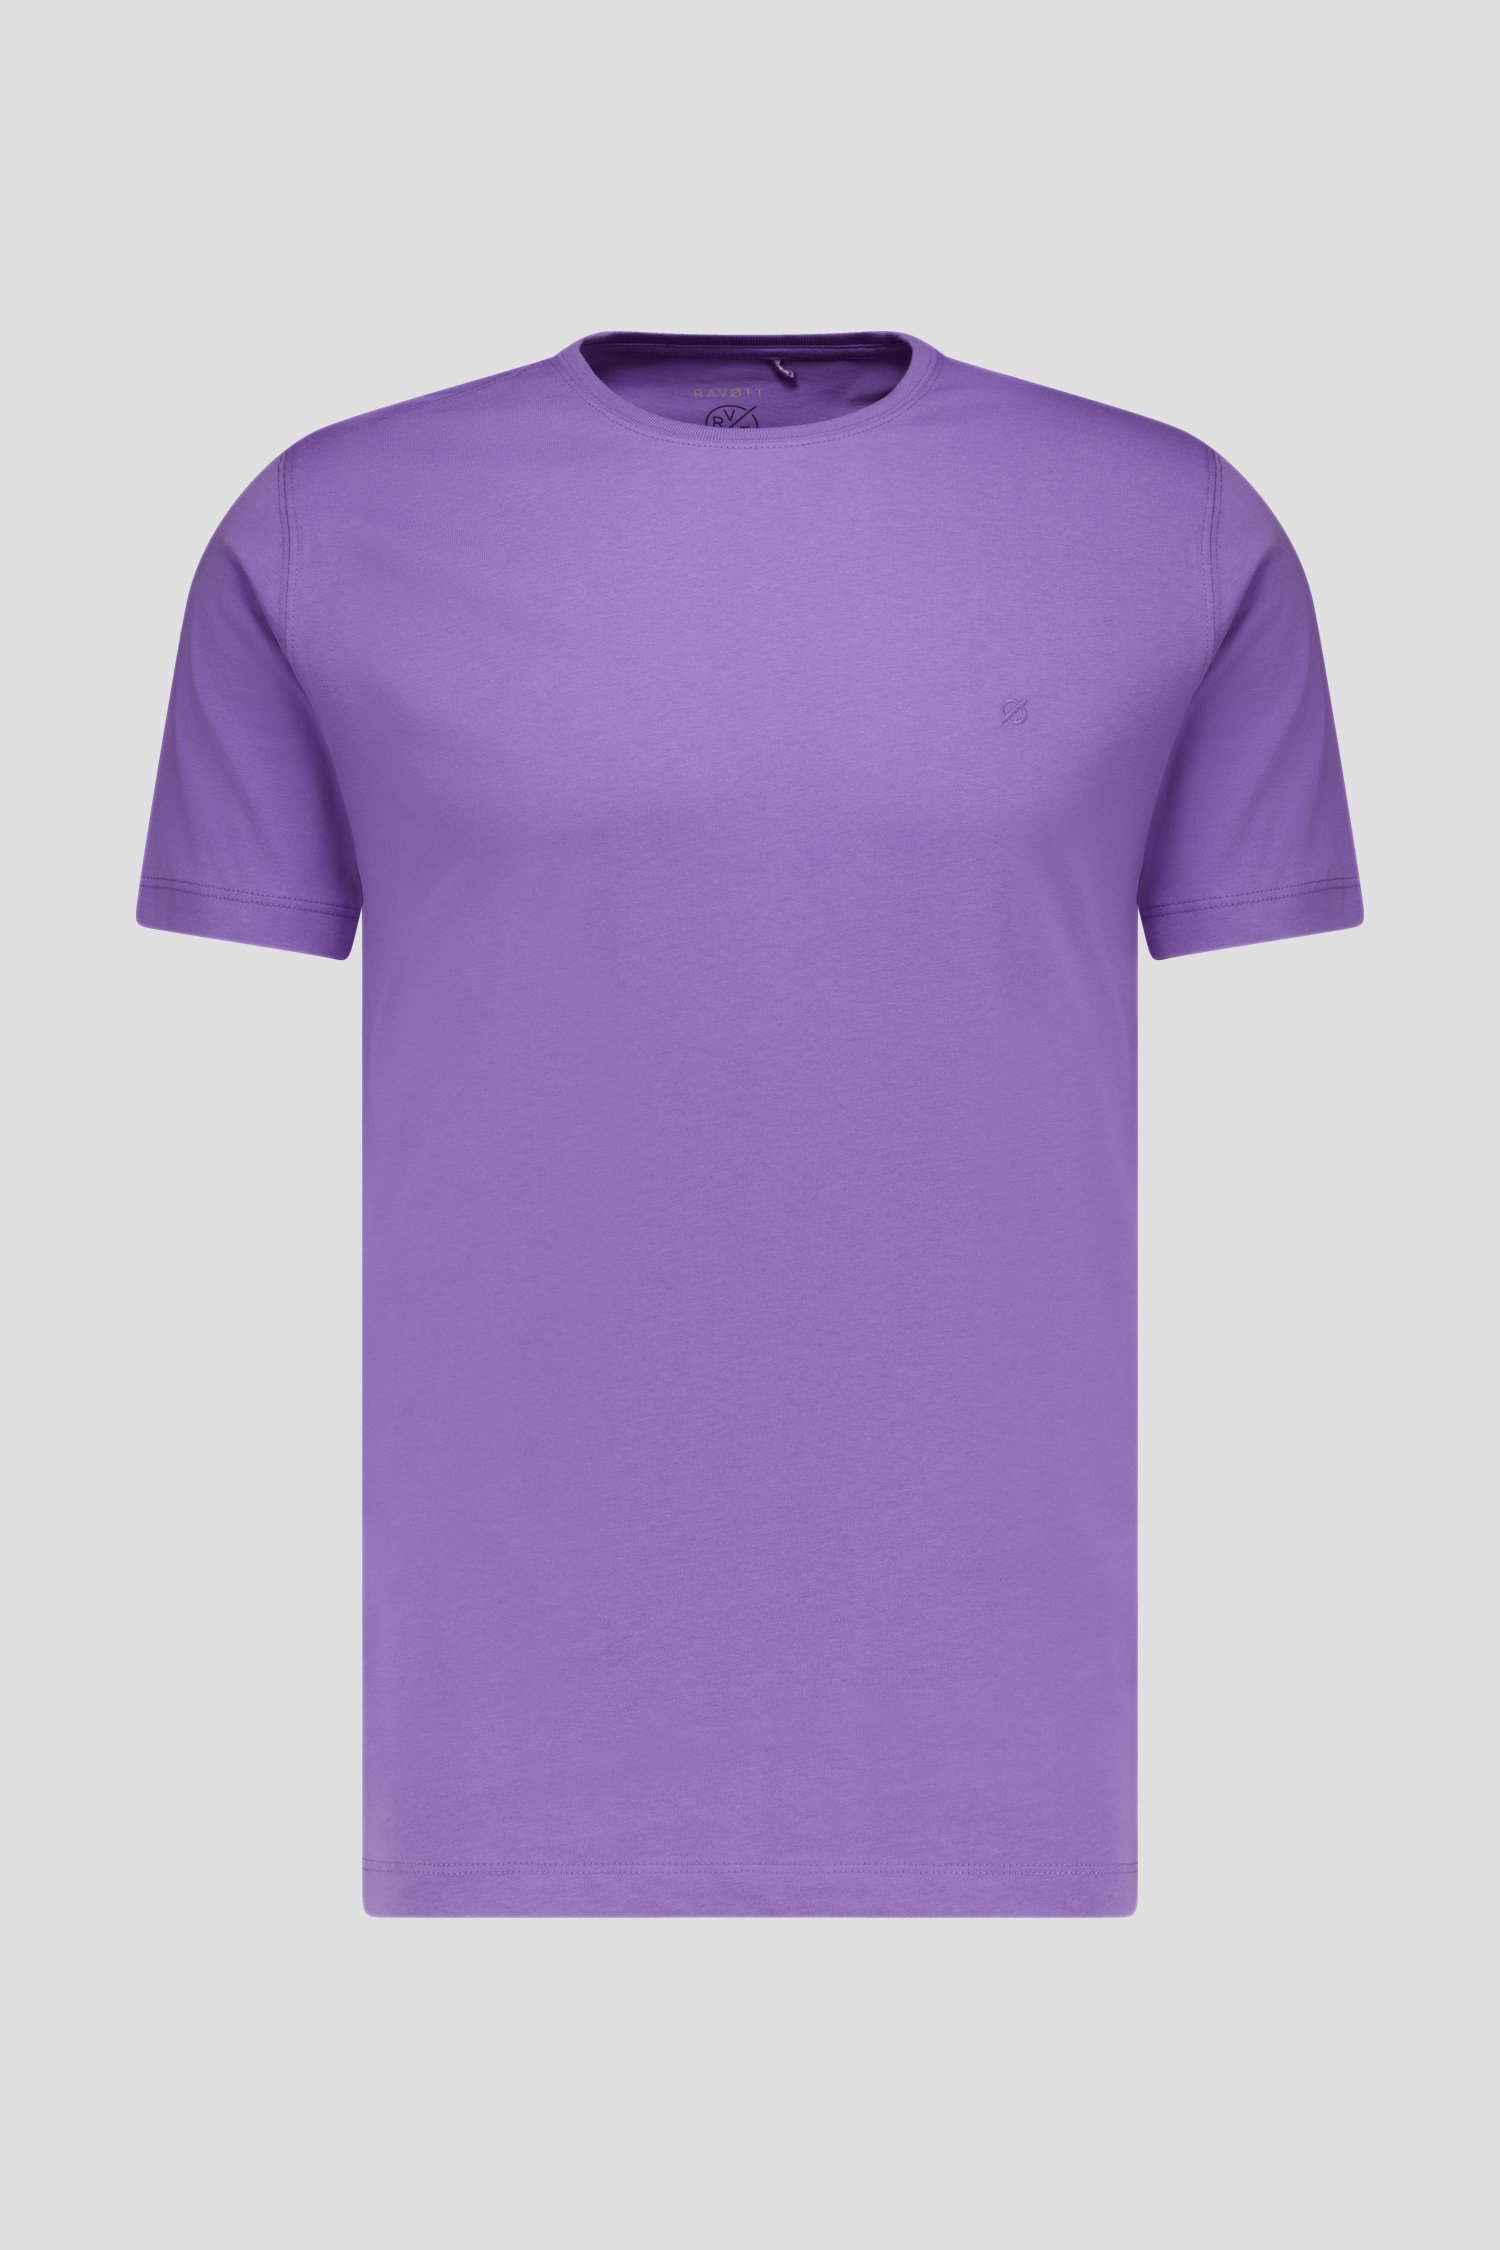 T-shirt à col rond violet de Ravøtt pour Hommes